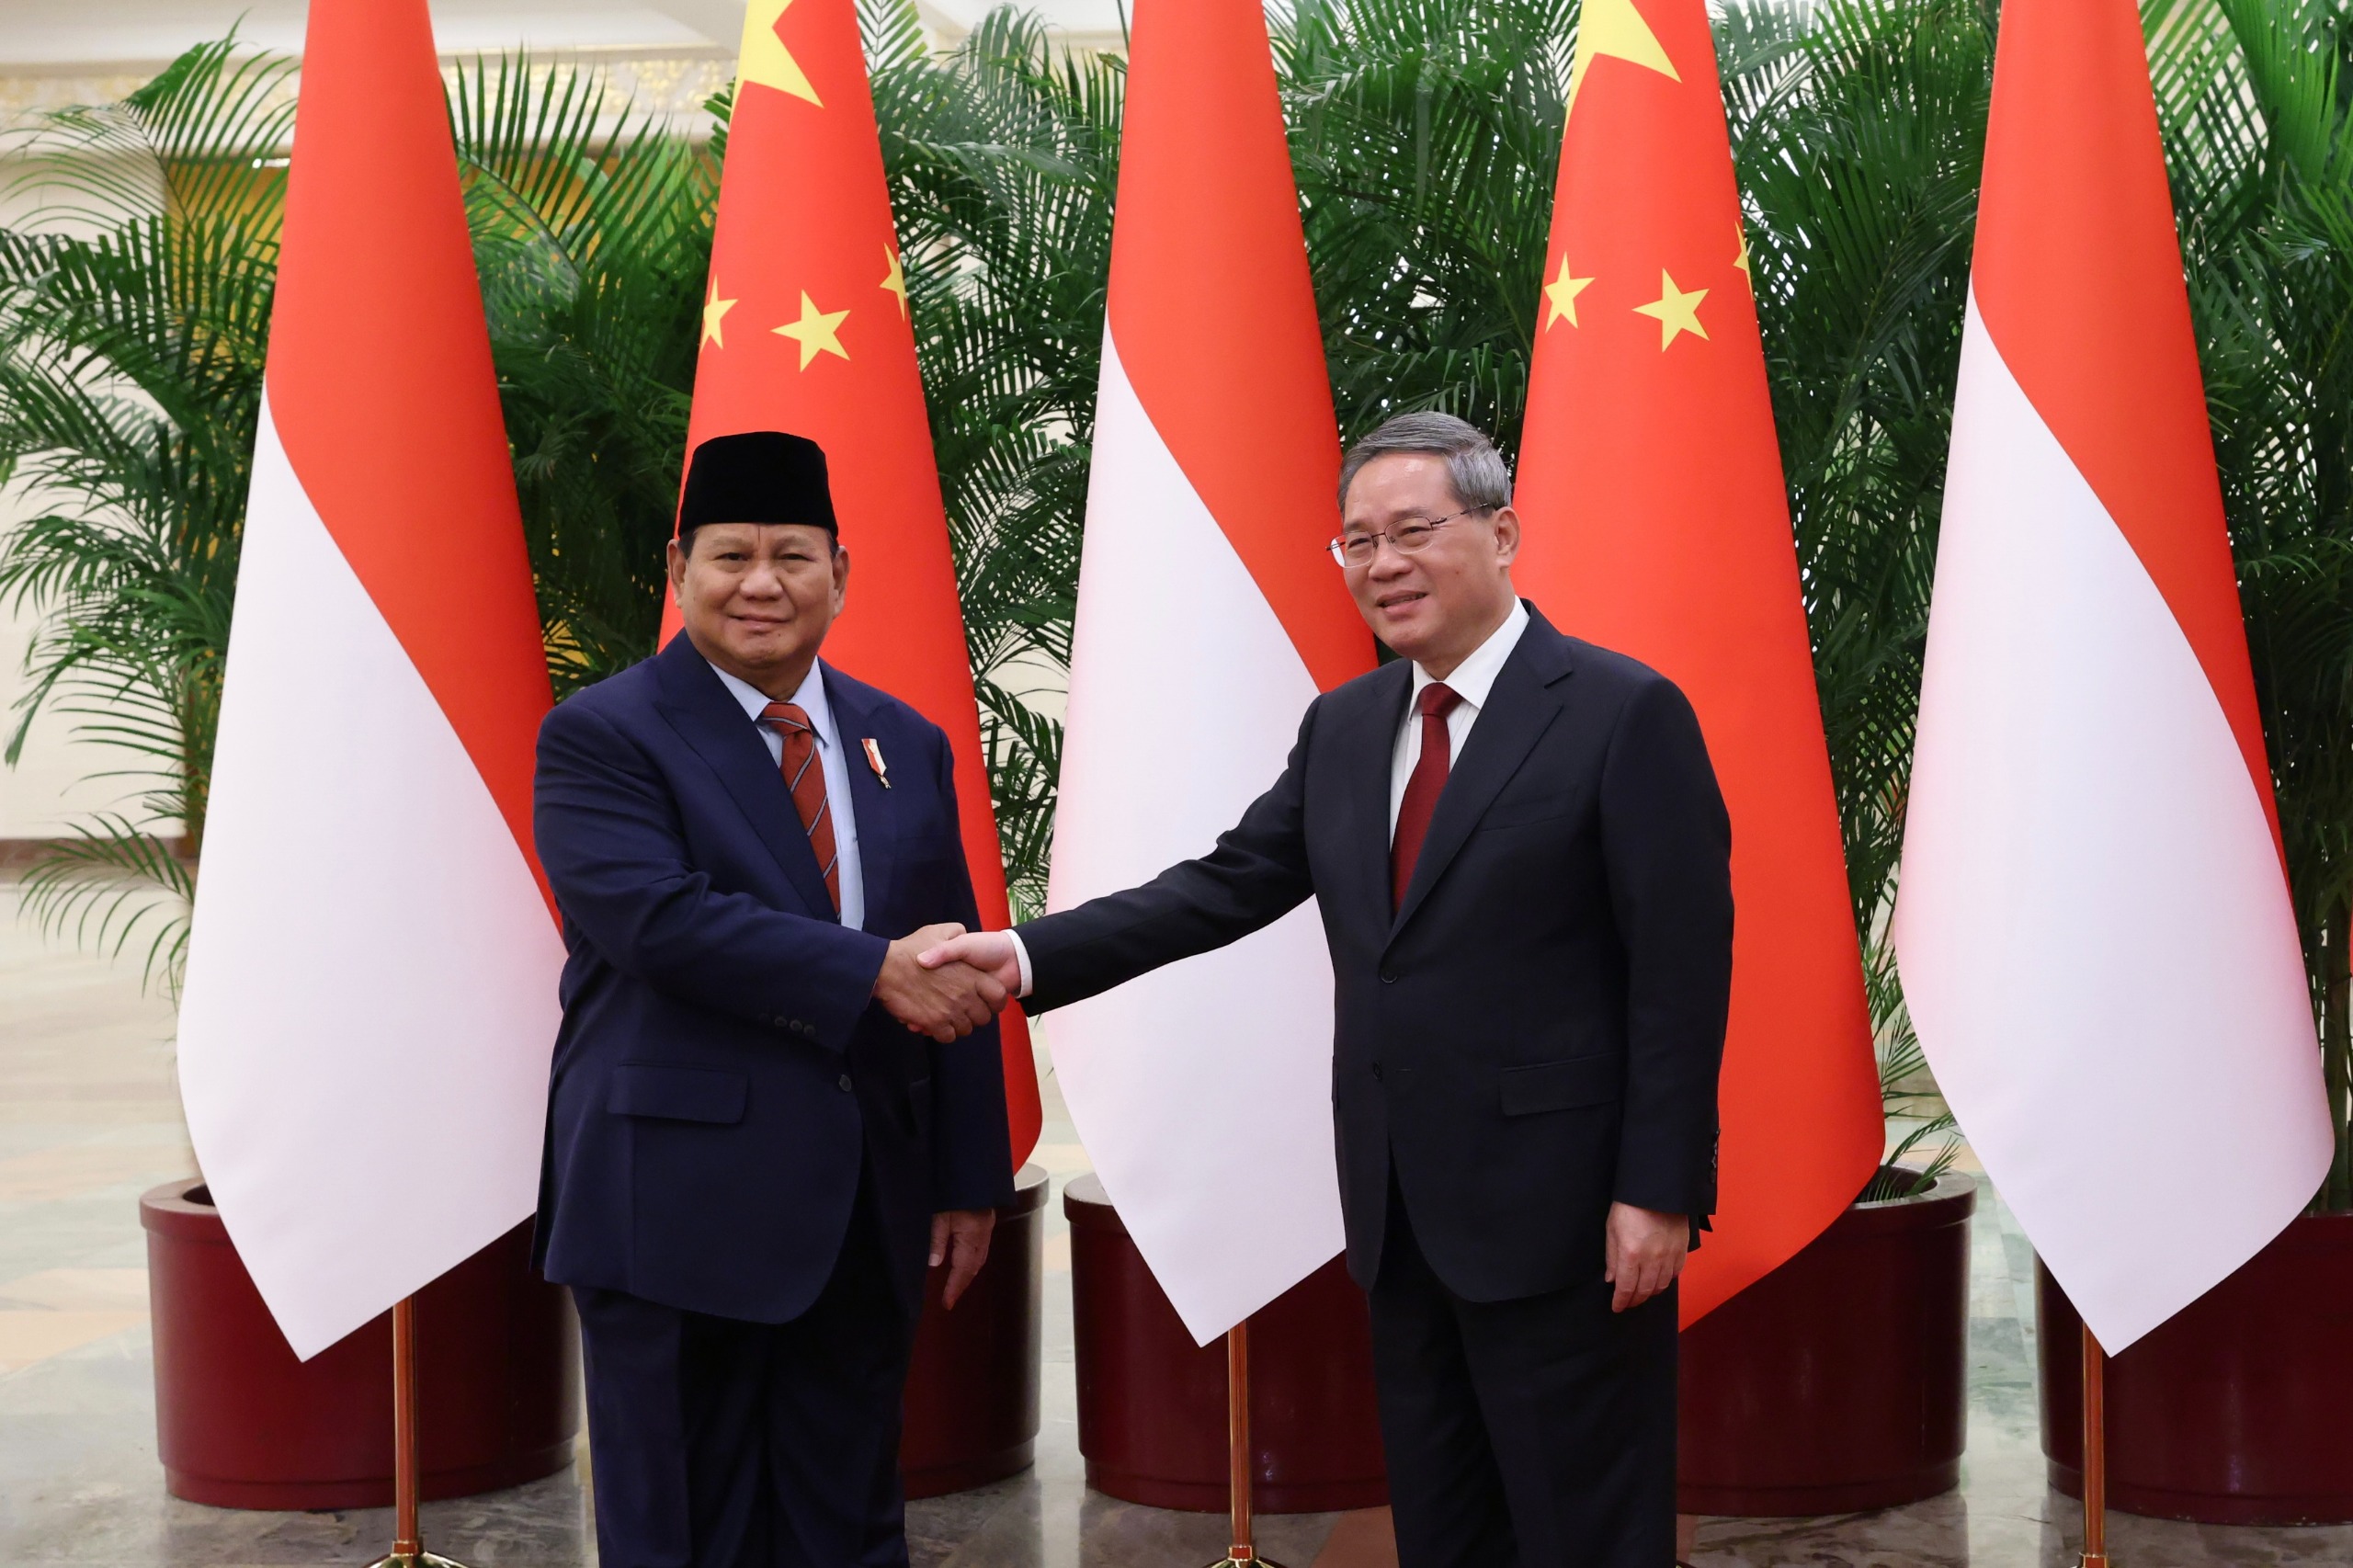 Temui PM Li Qiang, Prabowo Bahas Penguatan Kerja Sama RI-Tiongkok